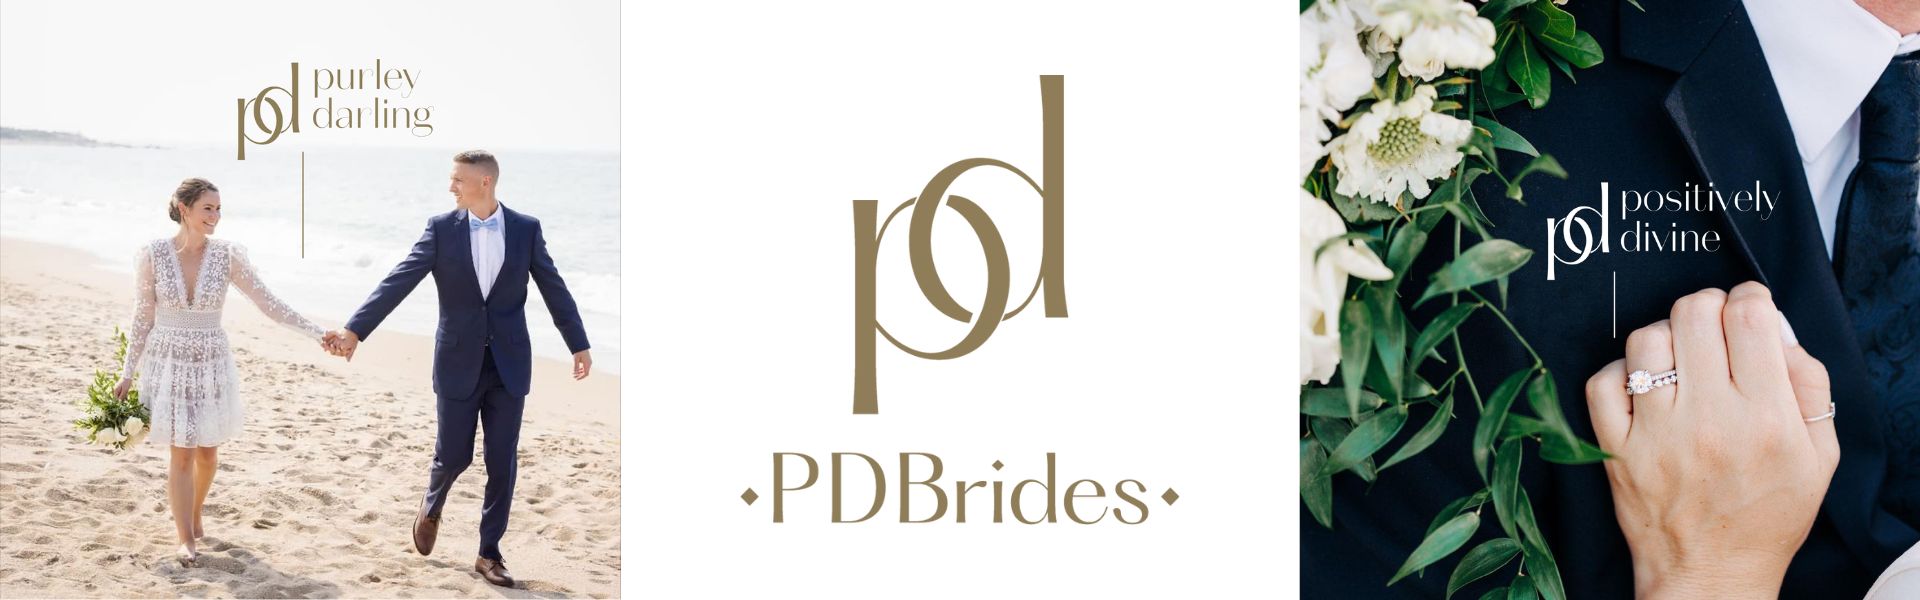 PD Brides